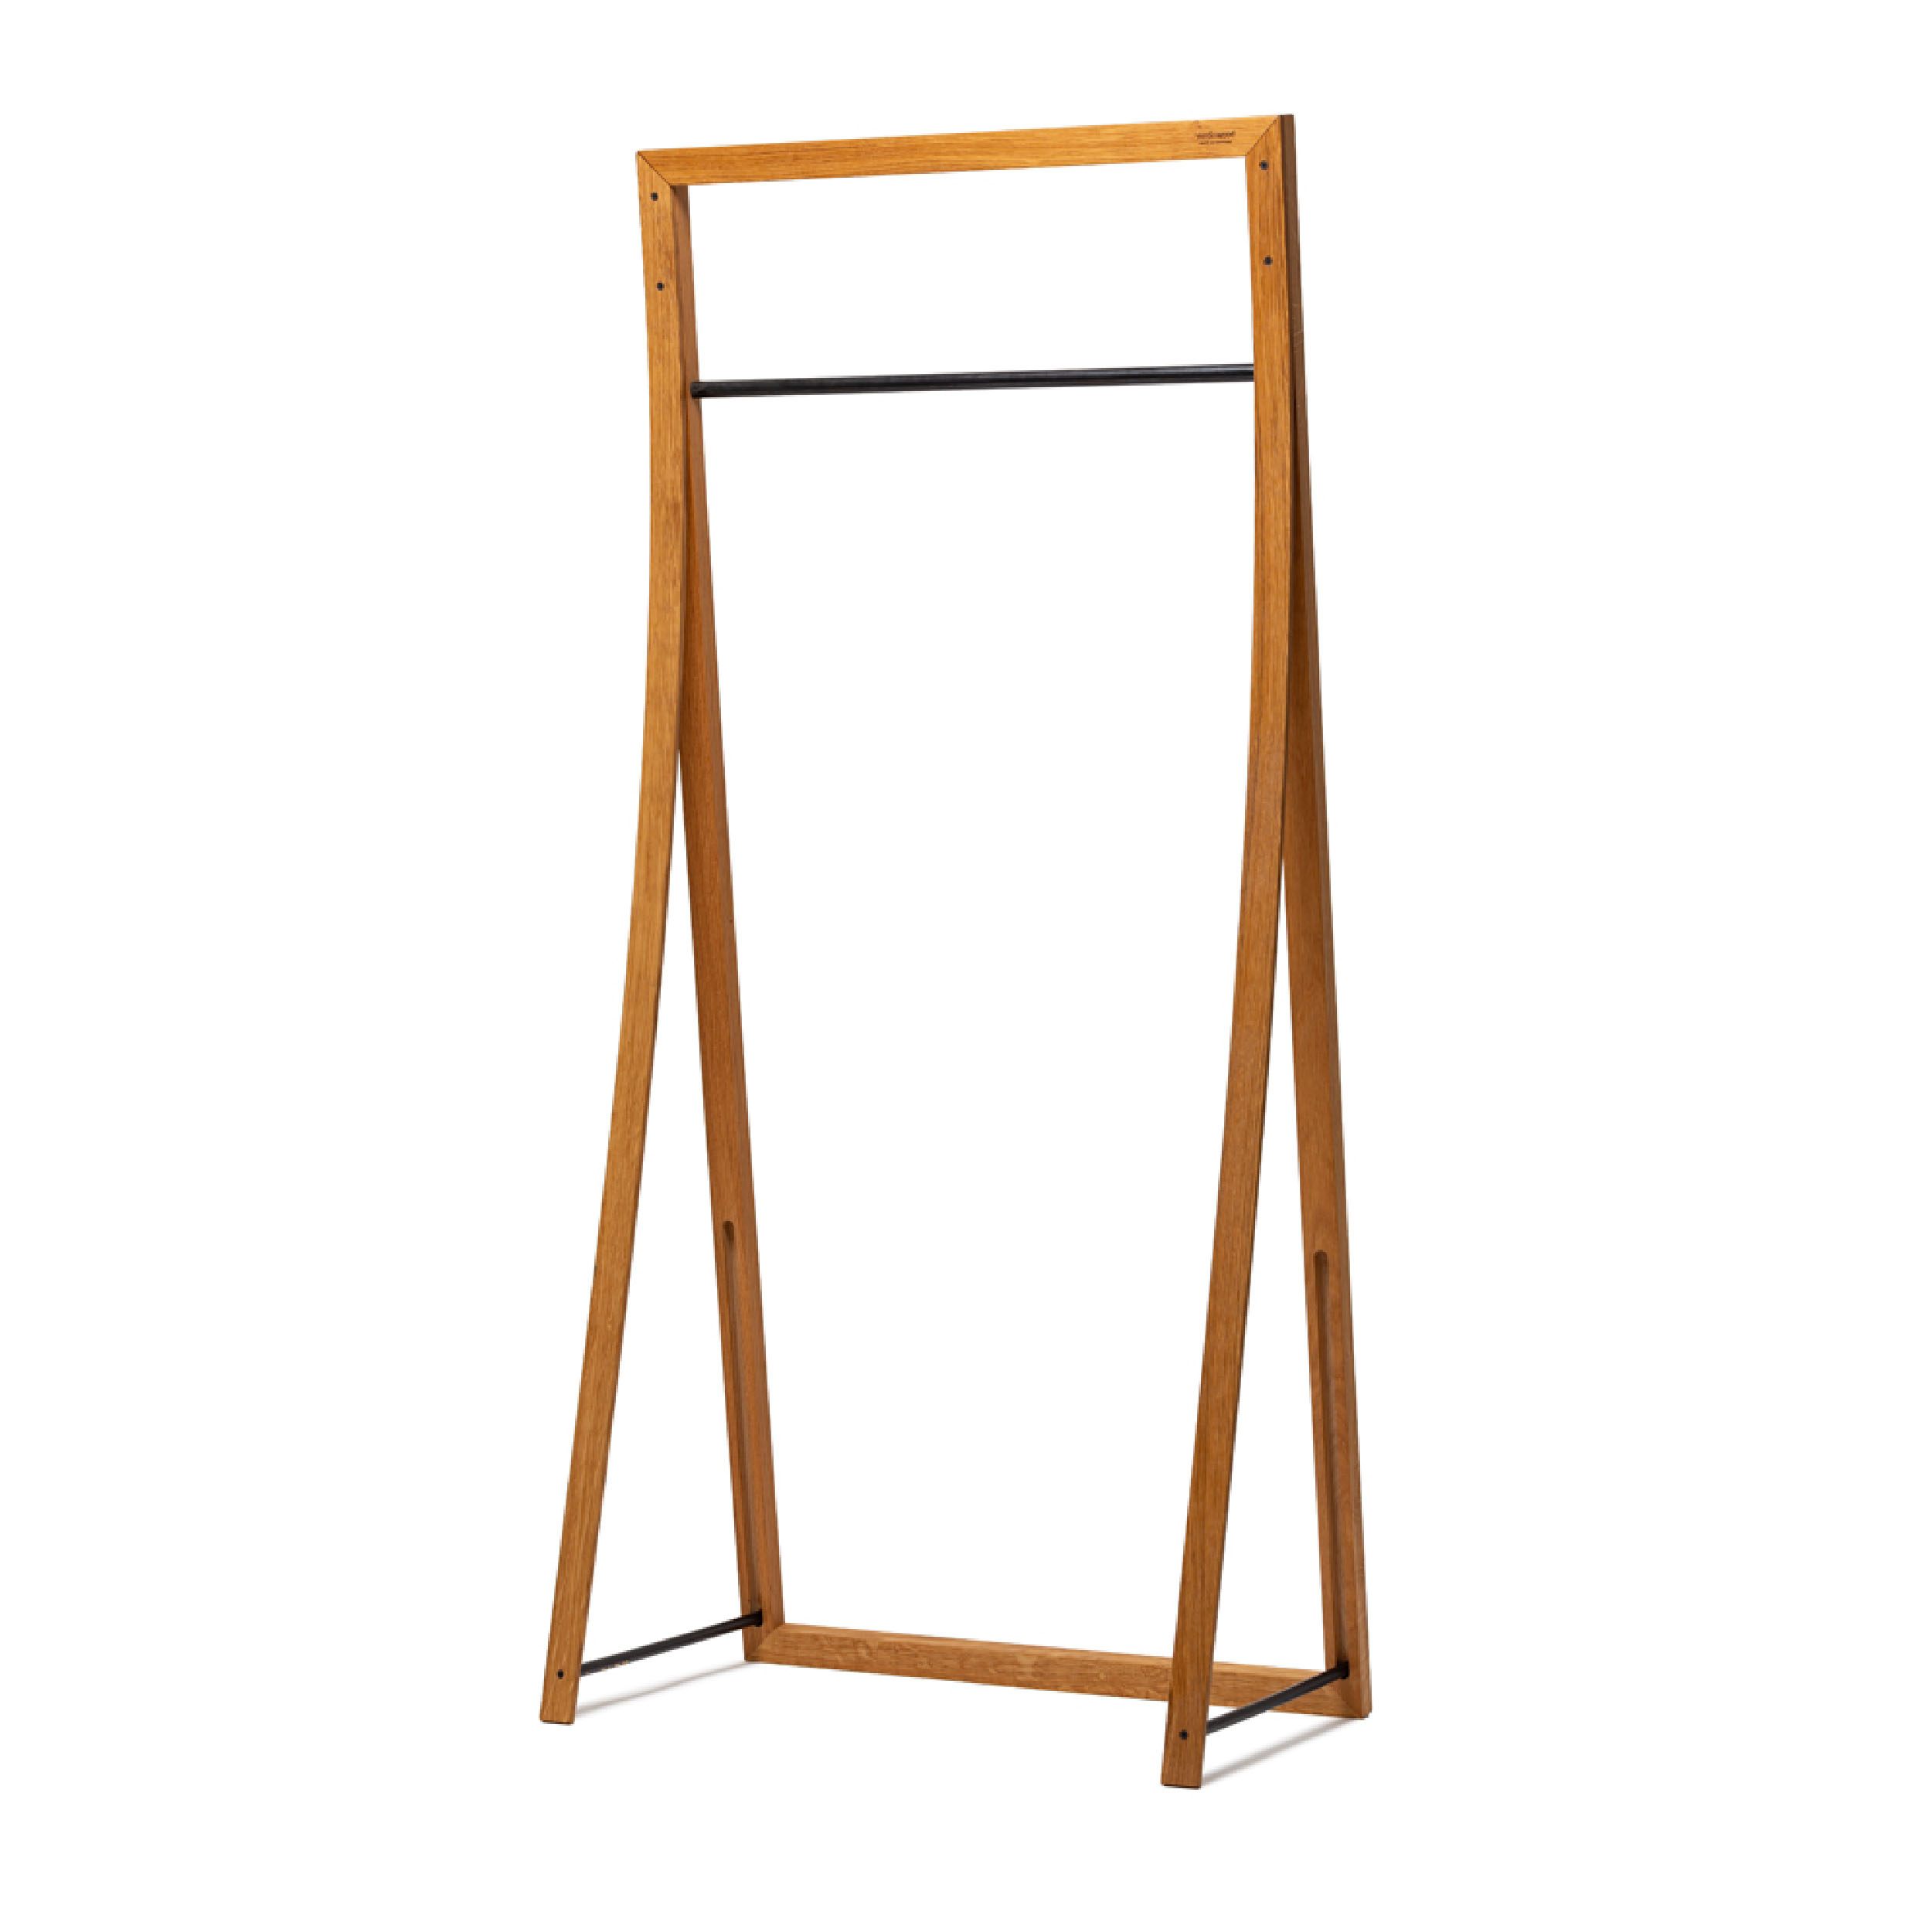 Framed Hanger Garderobe